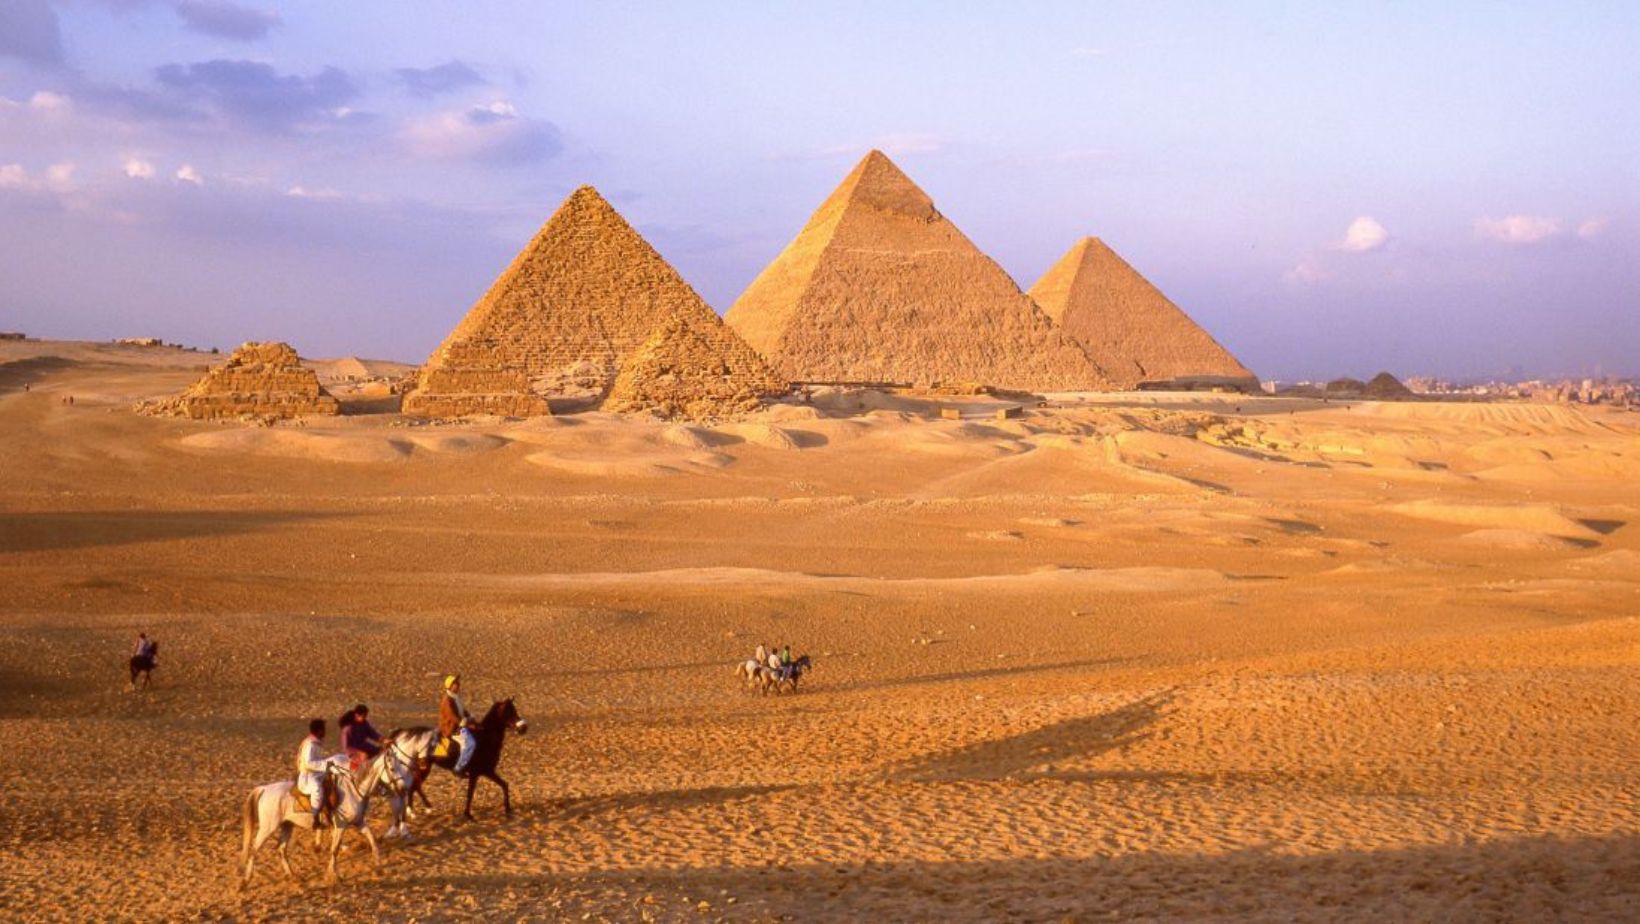 Black Pyramid at Giza